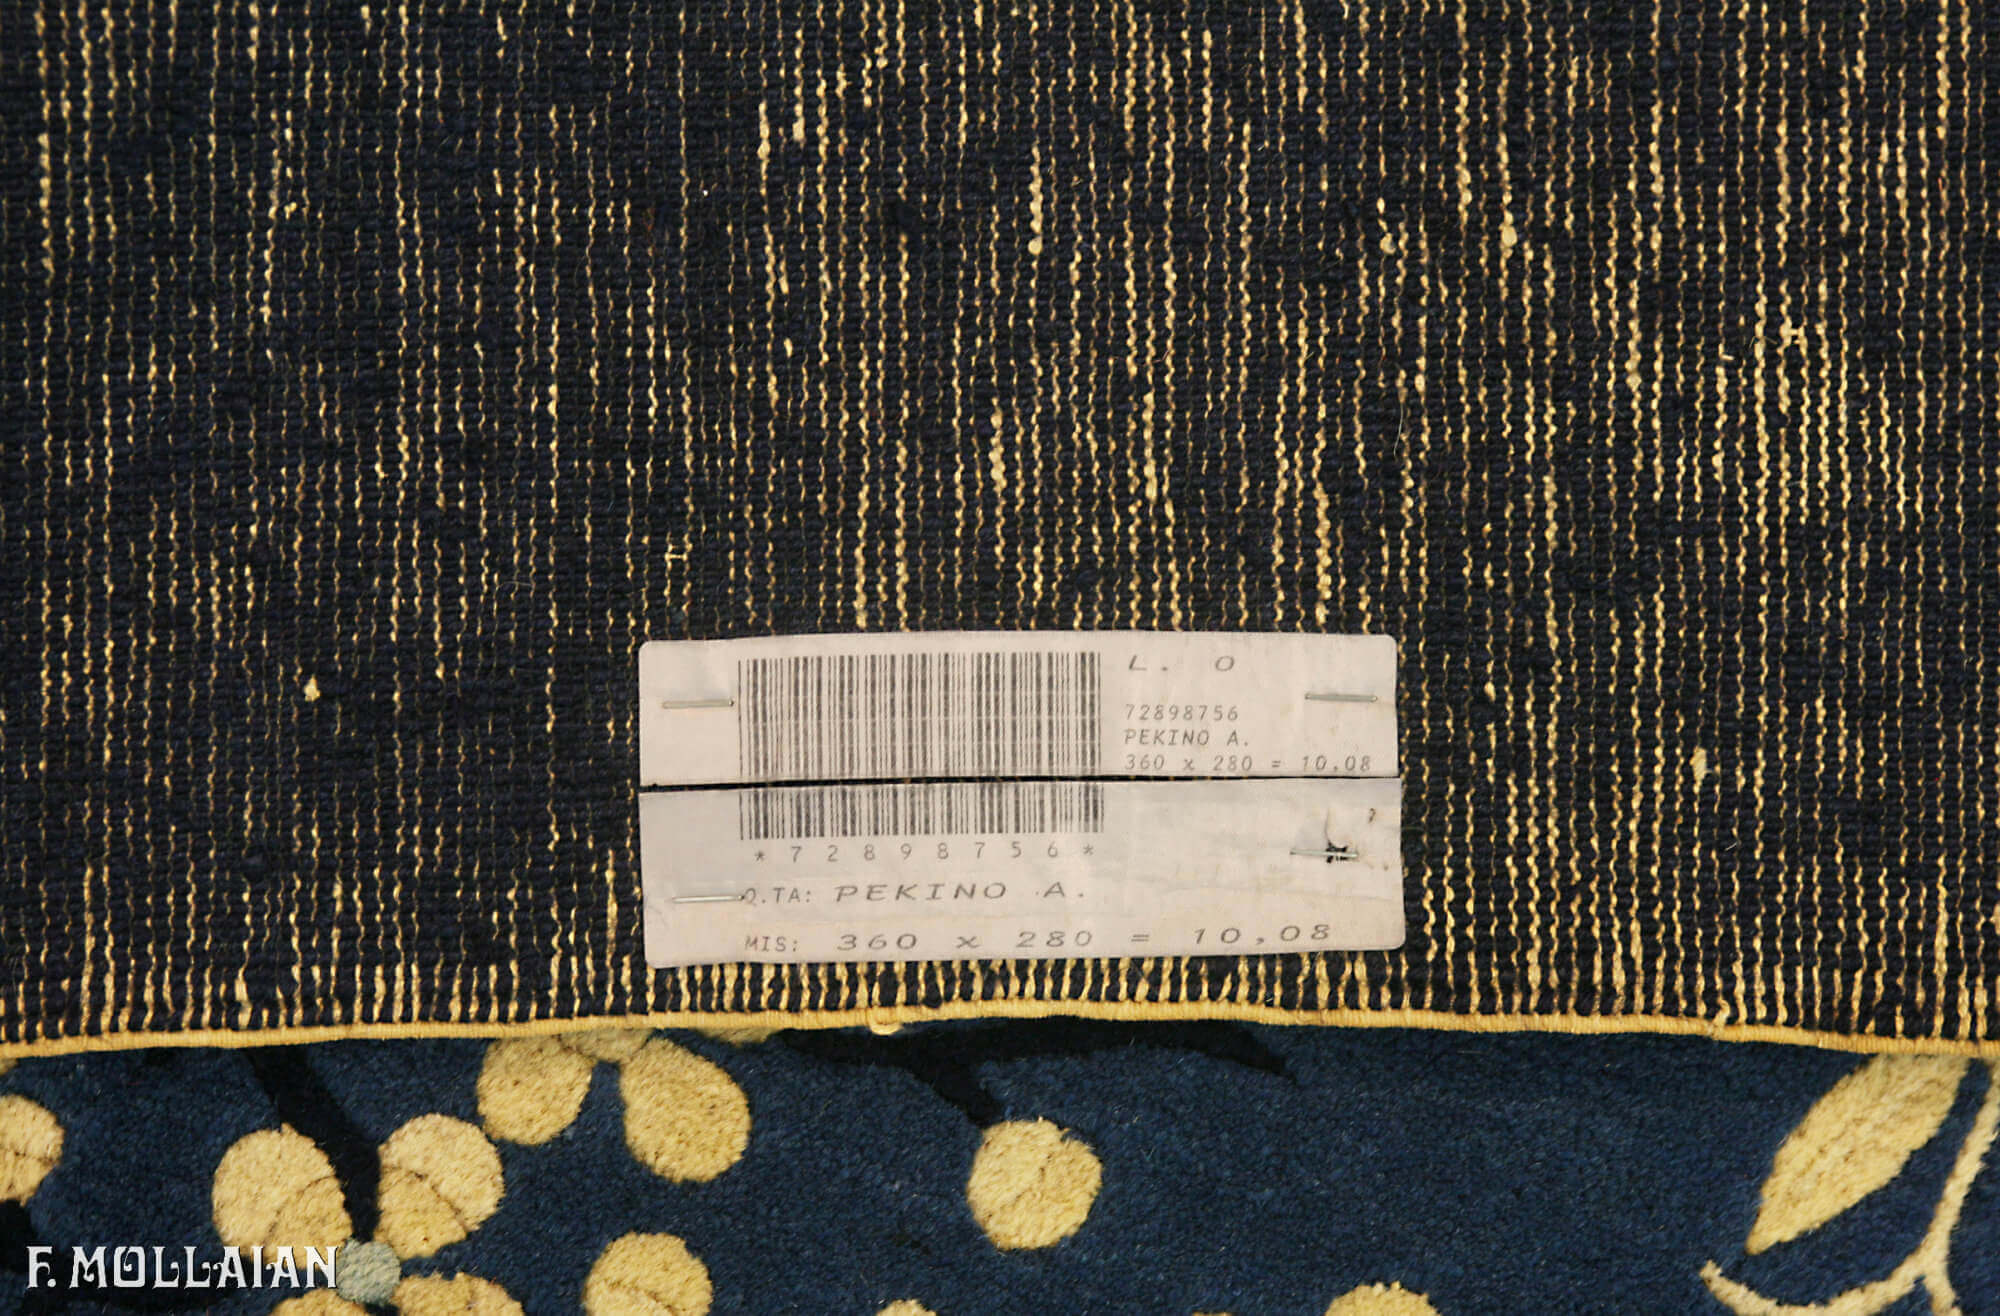 Antique Chinese Peking Carpet n°:72898756